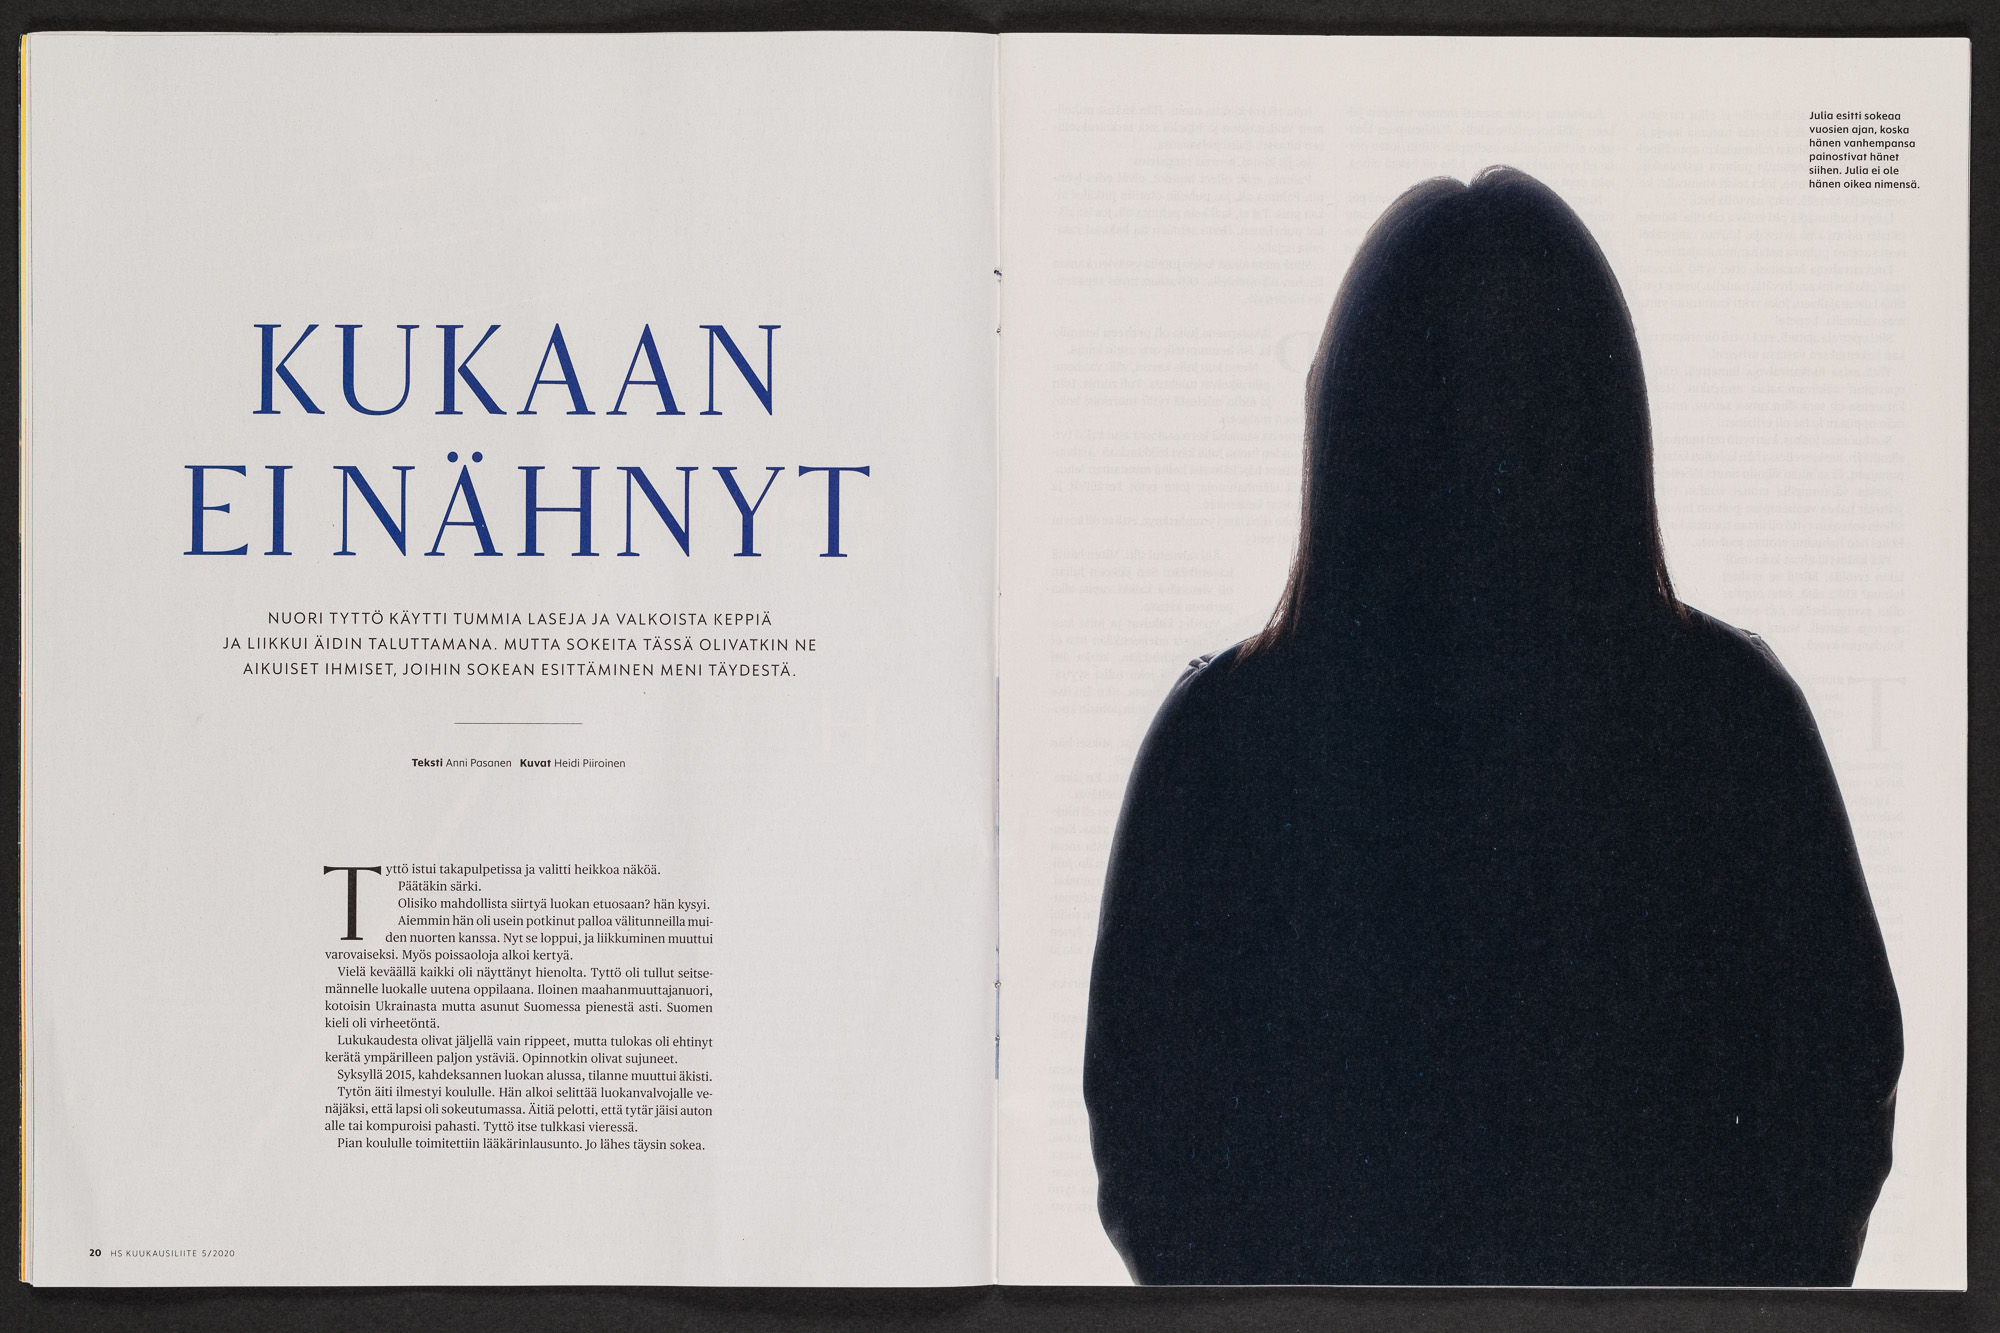 Aukeama Helsingin Sanomista. Vasemmalla sivulla on otsikko "Kukaan ei nähnyt" ja oikealla sivulla tumma ihmisen profiili.